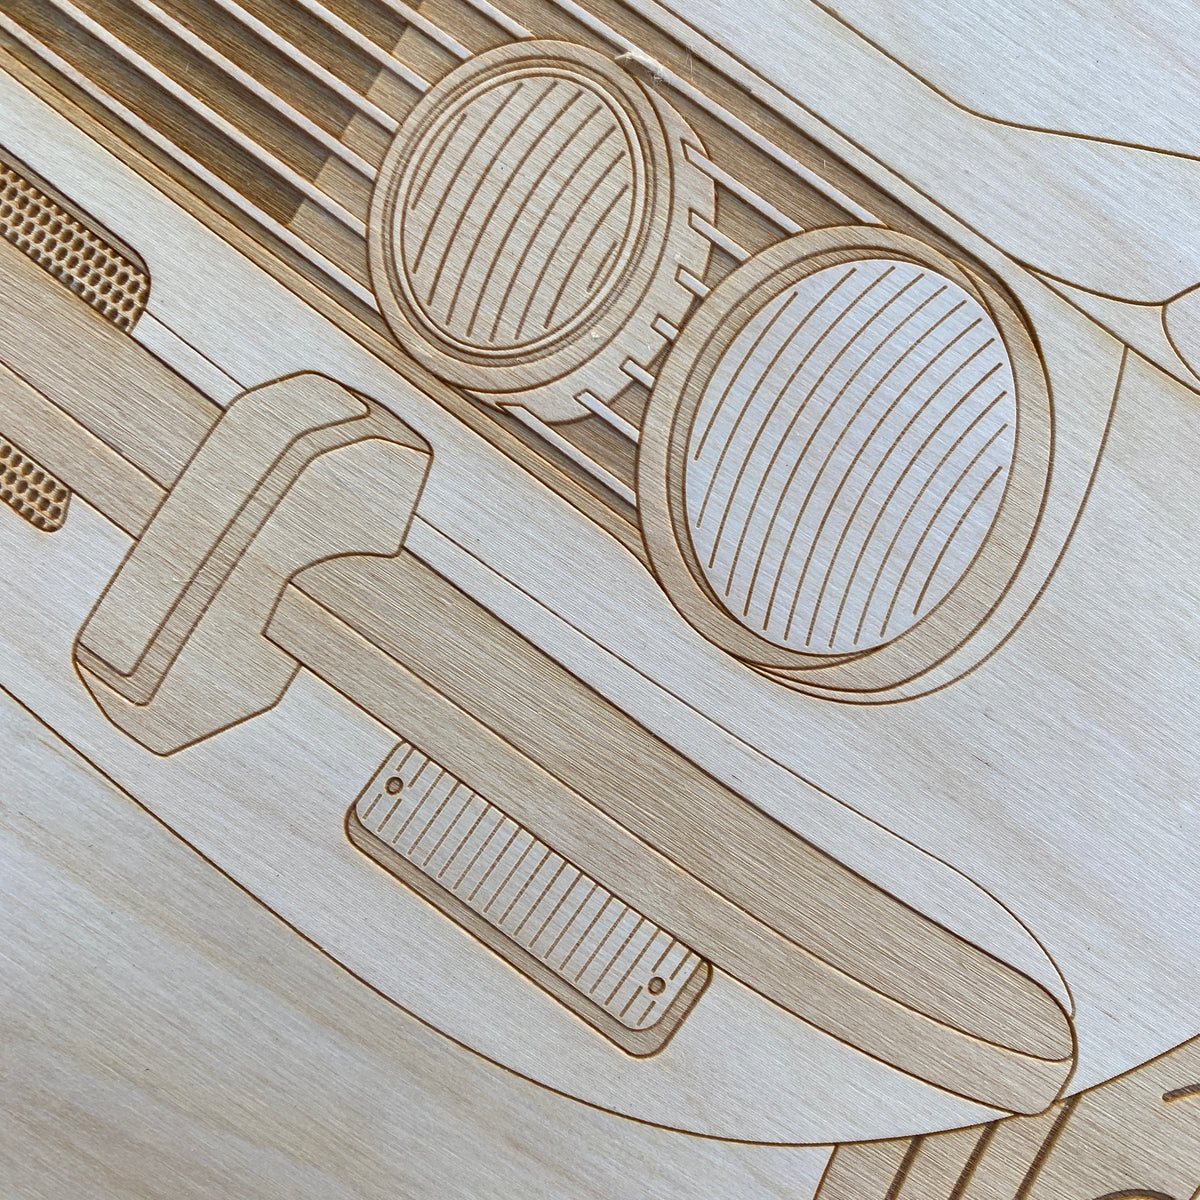 Alfa Romeo GTV Framed Wood Engraved Artwork